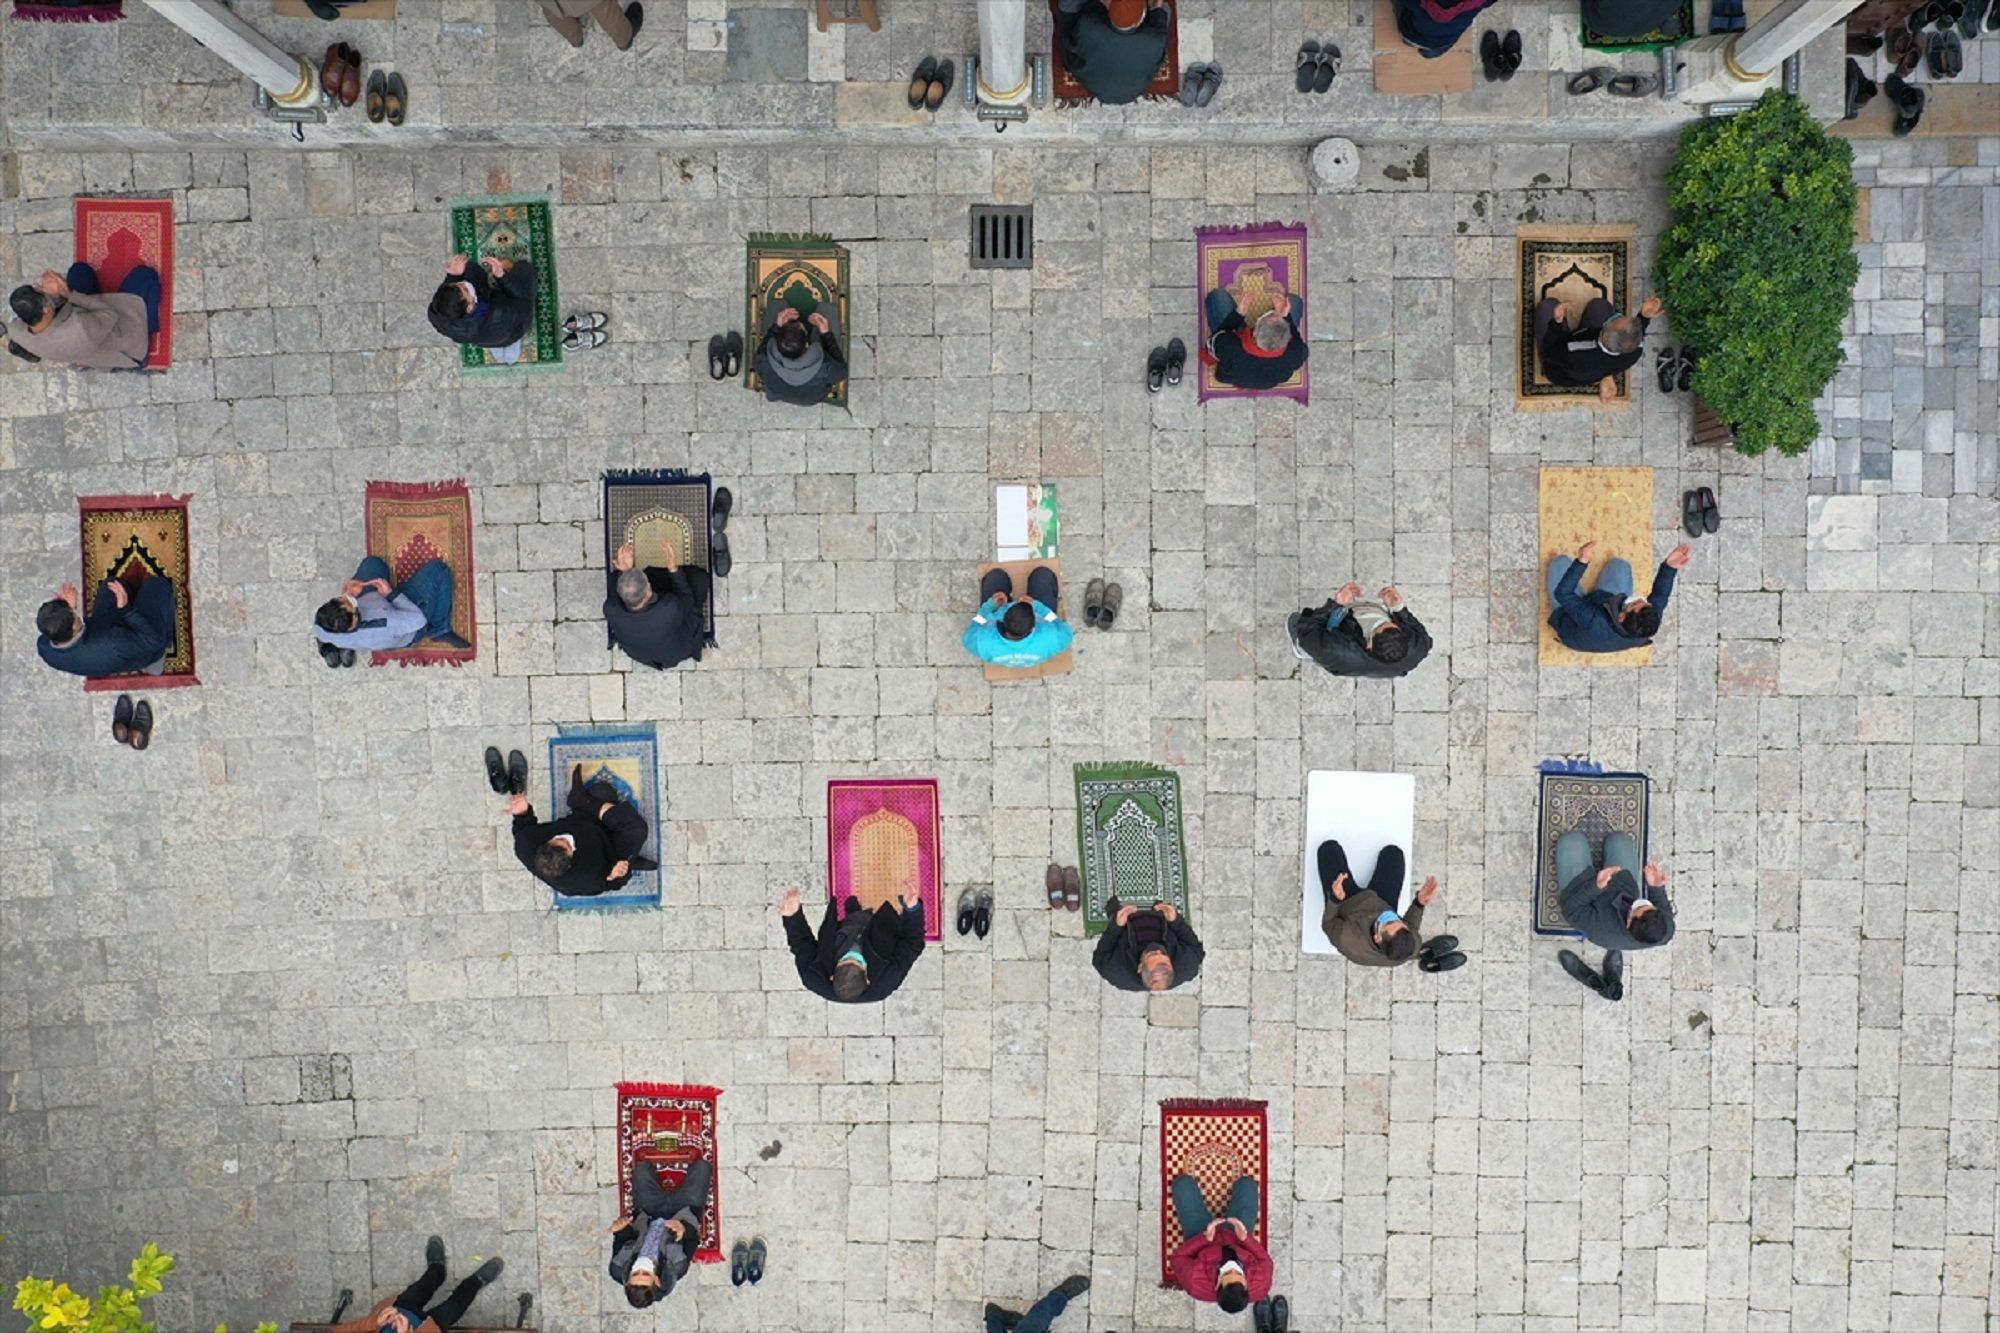 Hatay'da da cuma namazı sonrası camilerde yağmur duası yapıldı. Anadolu'nun en eski camisi Habib-i Neccar'da sosyal mesafe ve maske kurallarına uygun kılınan namazın ardından vatandaşlar duaya iştirak etti. - Sputnik Türkiye